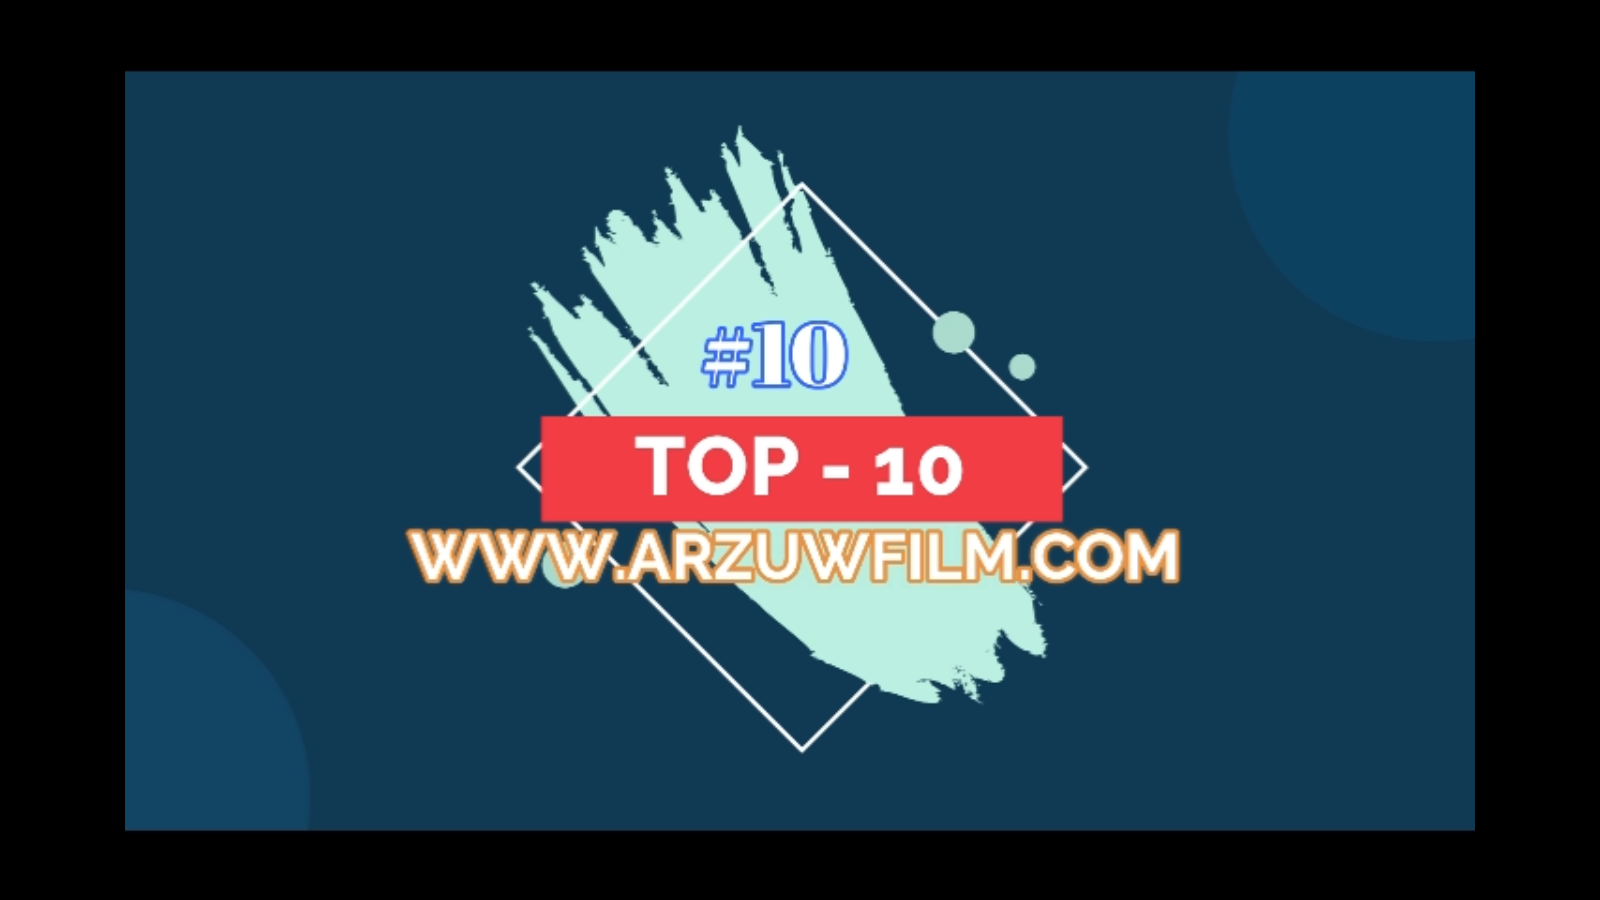 TOP - 10 arzuwfilm.com (oktyabr)